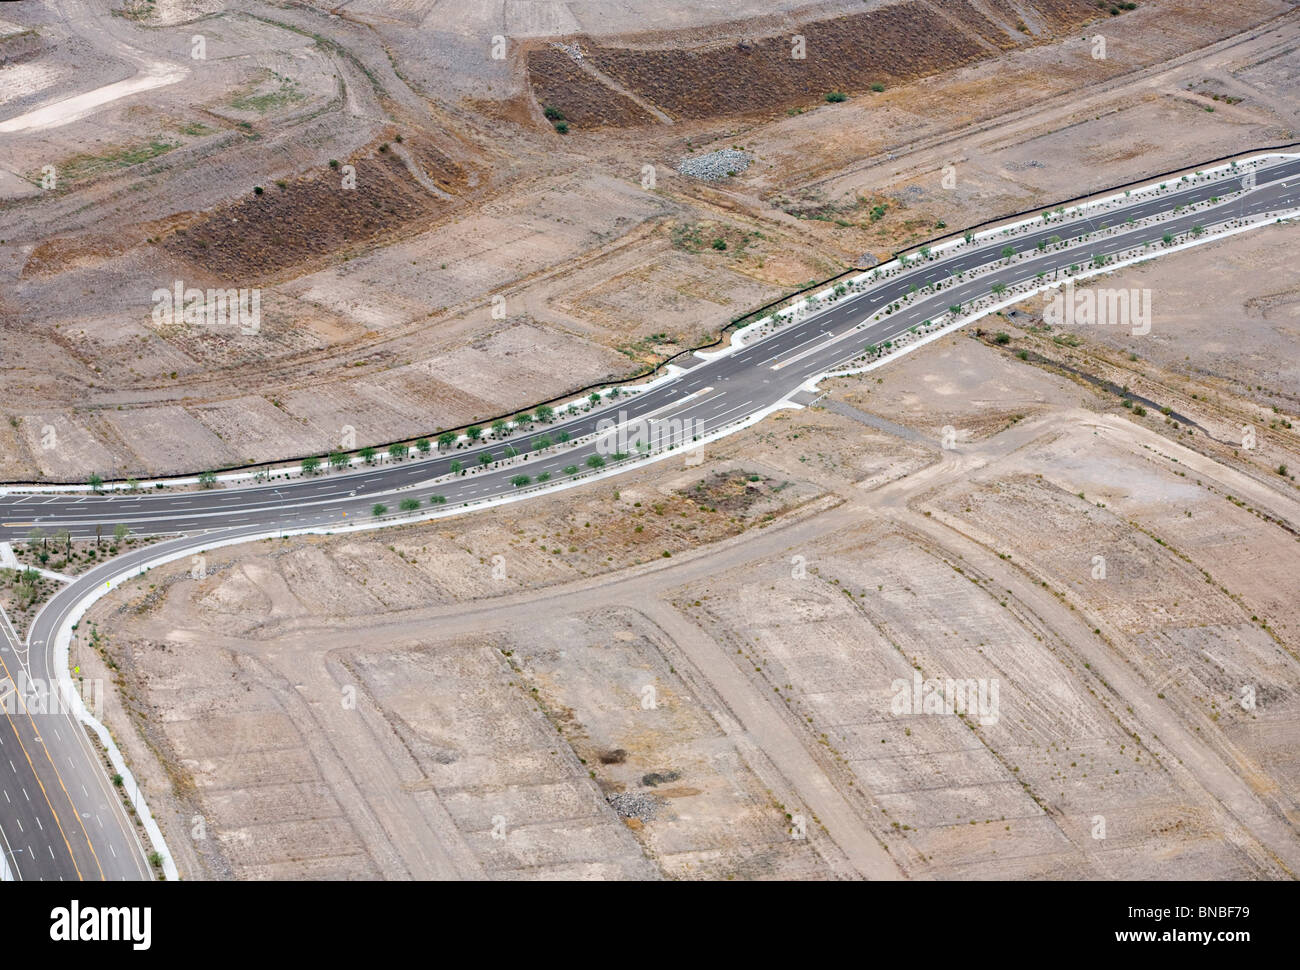 Vistas aéreas de inconcluso y abandonado los desarrollos de vivienda en el área de Phoenix, Arizona. Foto de stock